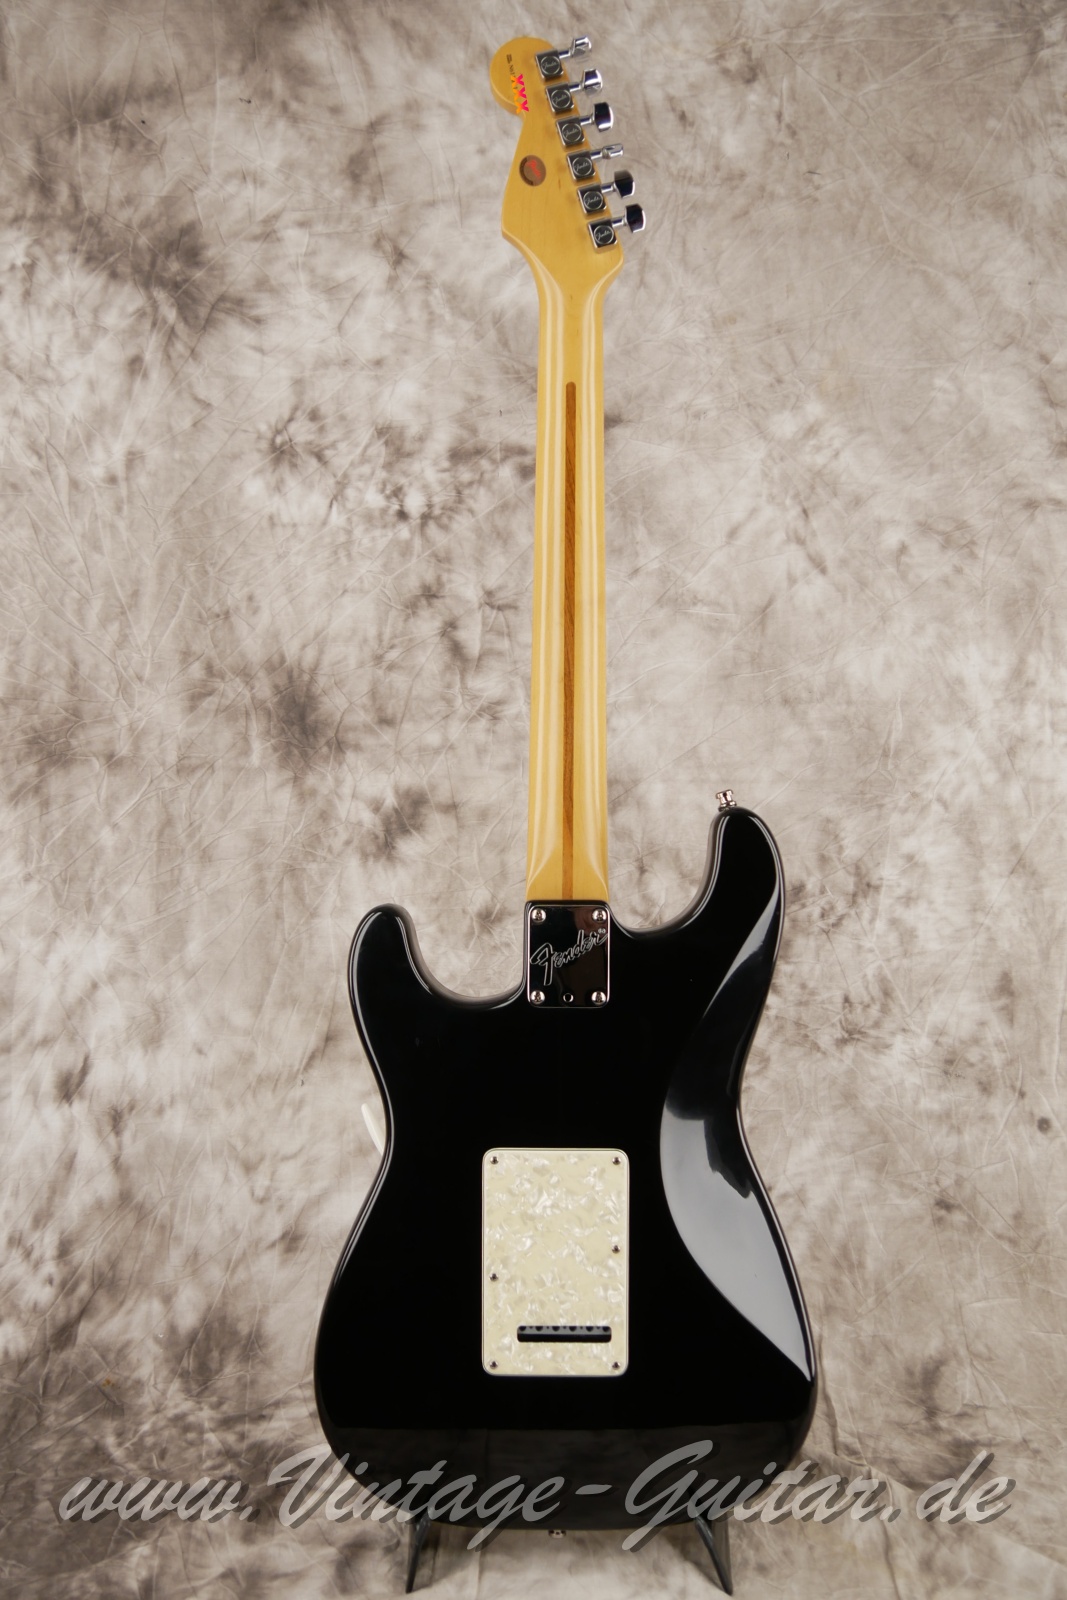 Fender_Stratocaster_US_Lonestar_1997_original_case_black_humbucker-002.jpg